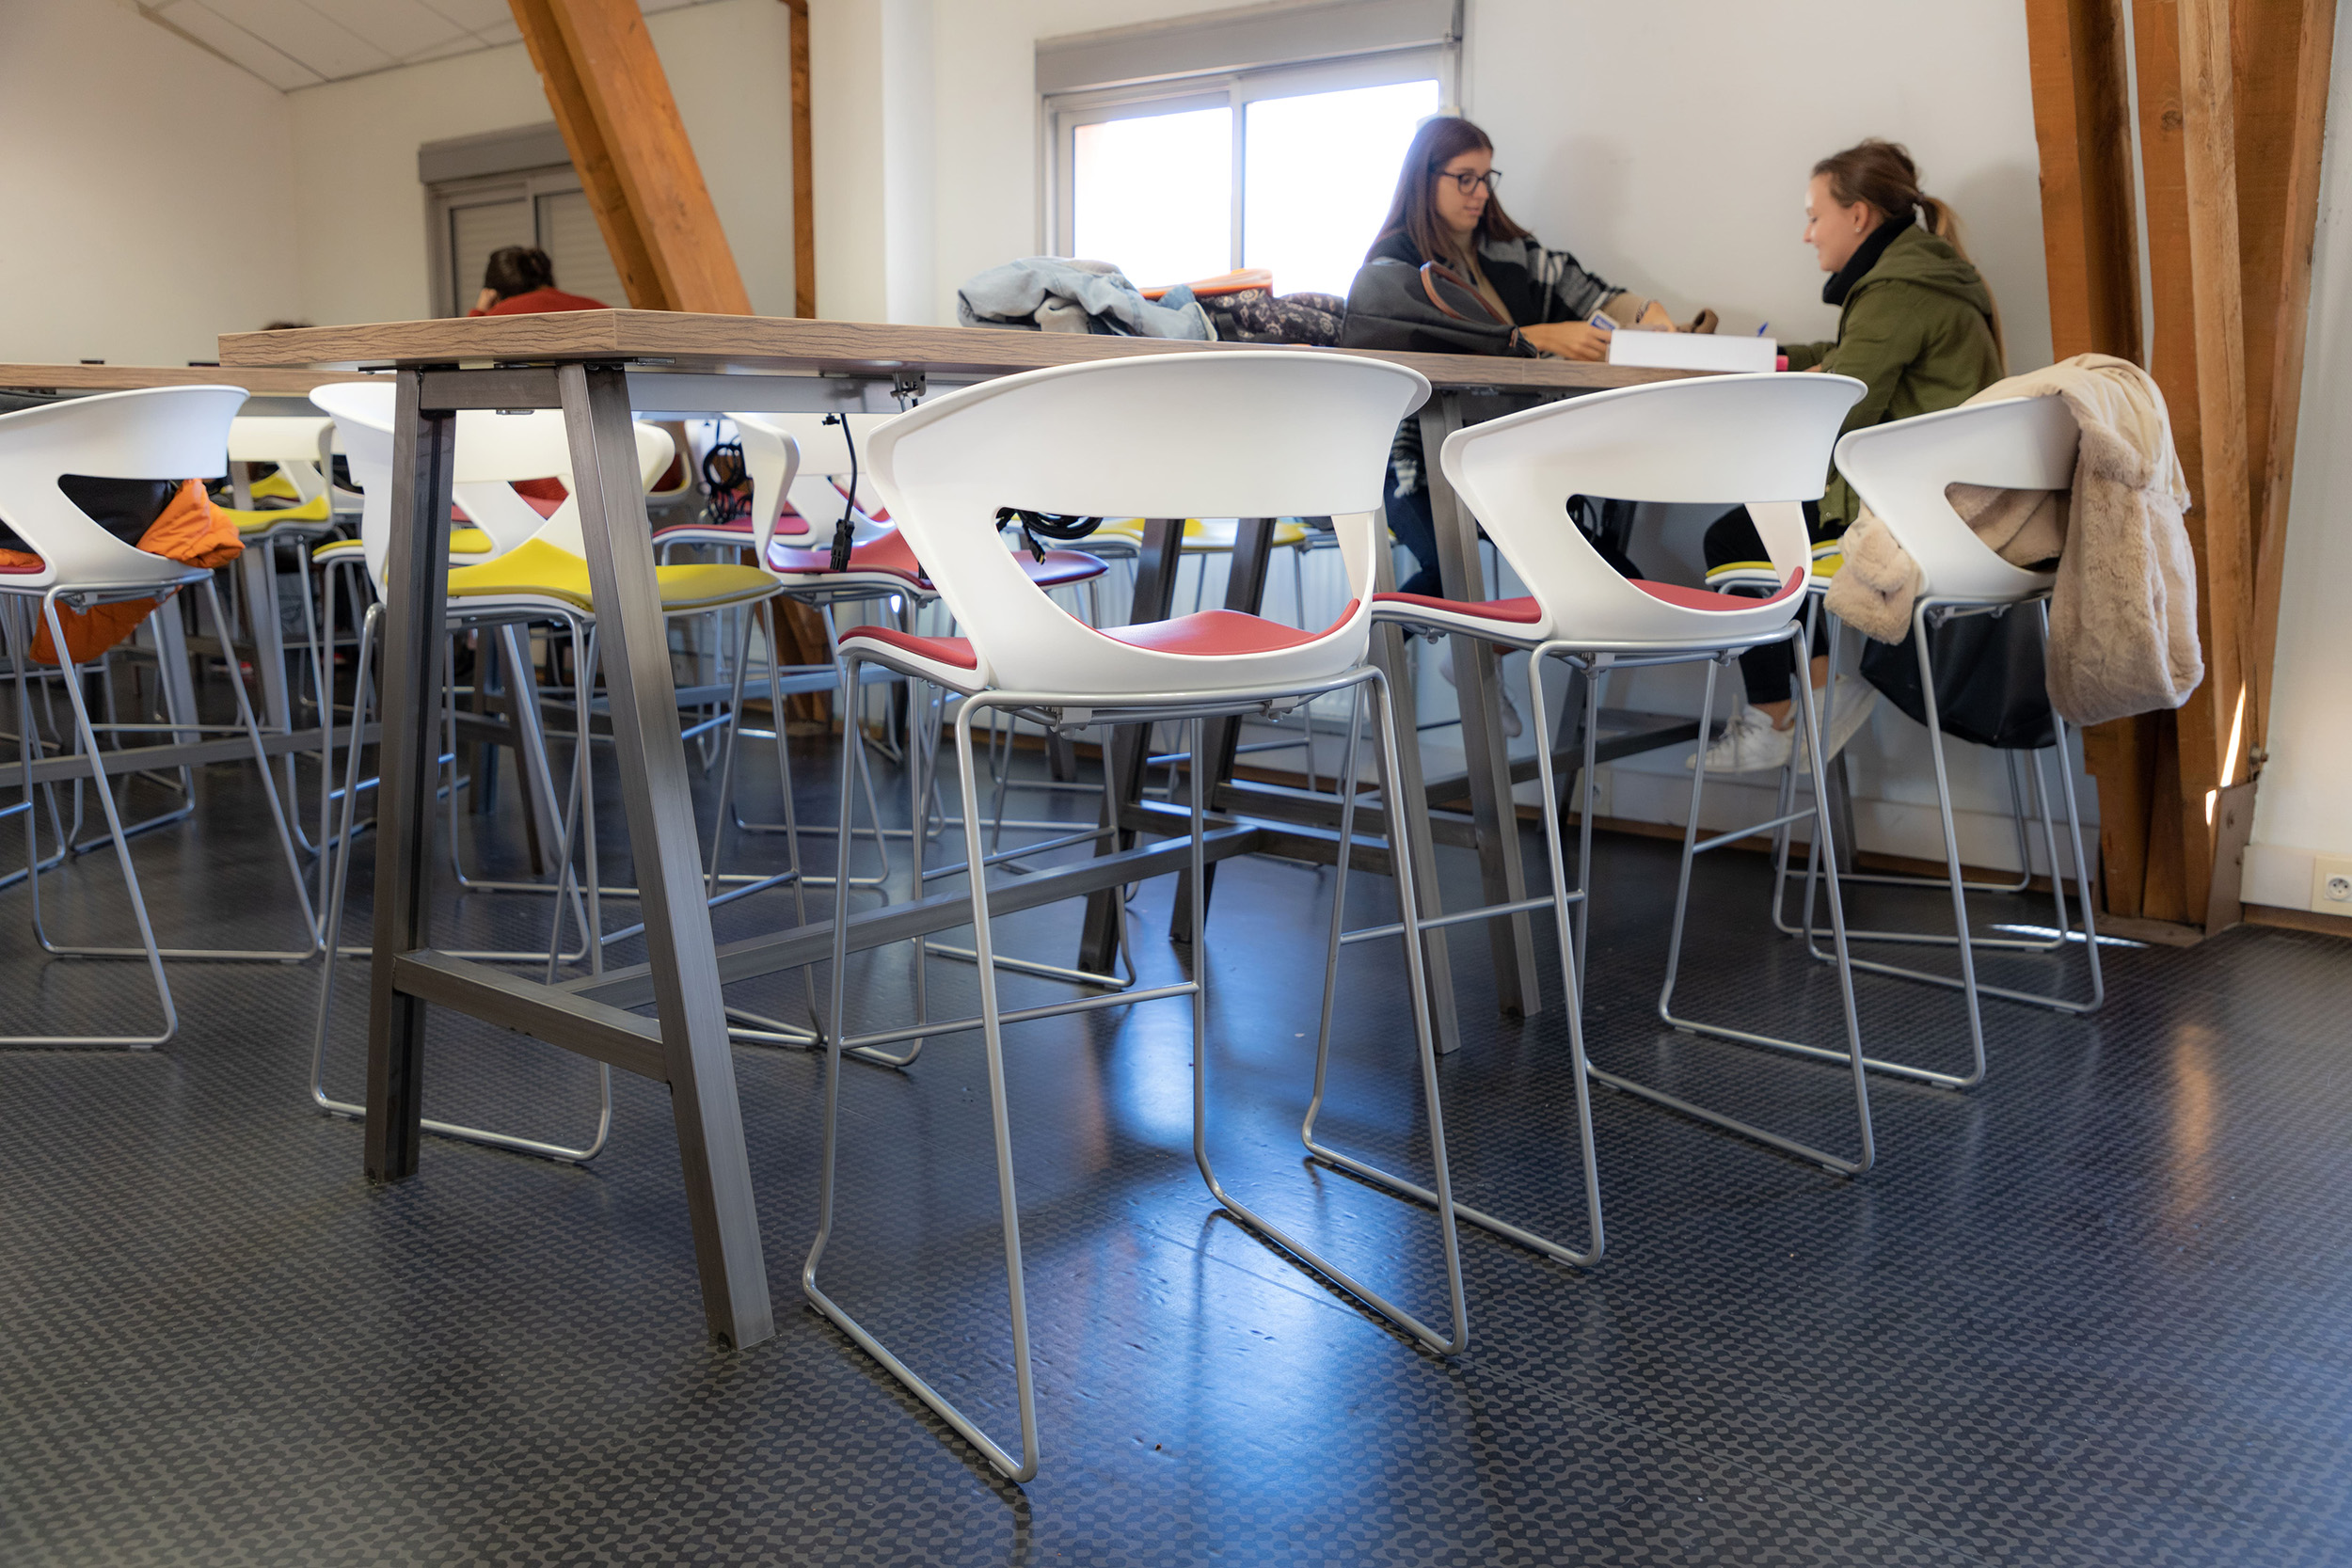 Tabouret avec assise rembourrée et tables hautes dans une salle de pause dans un établissement scolaire en Isère